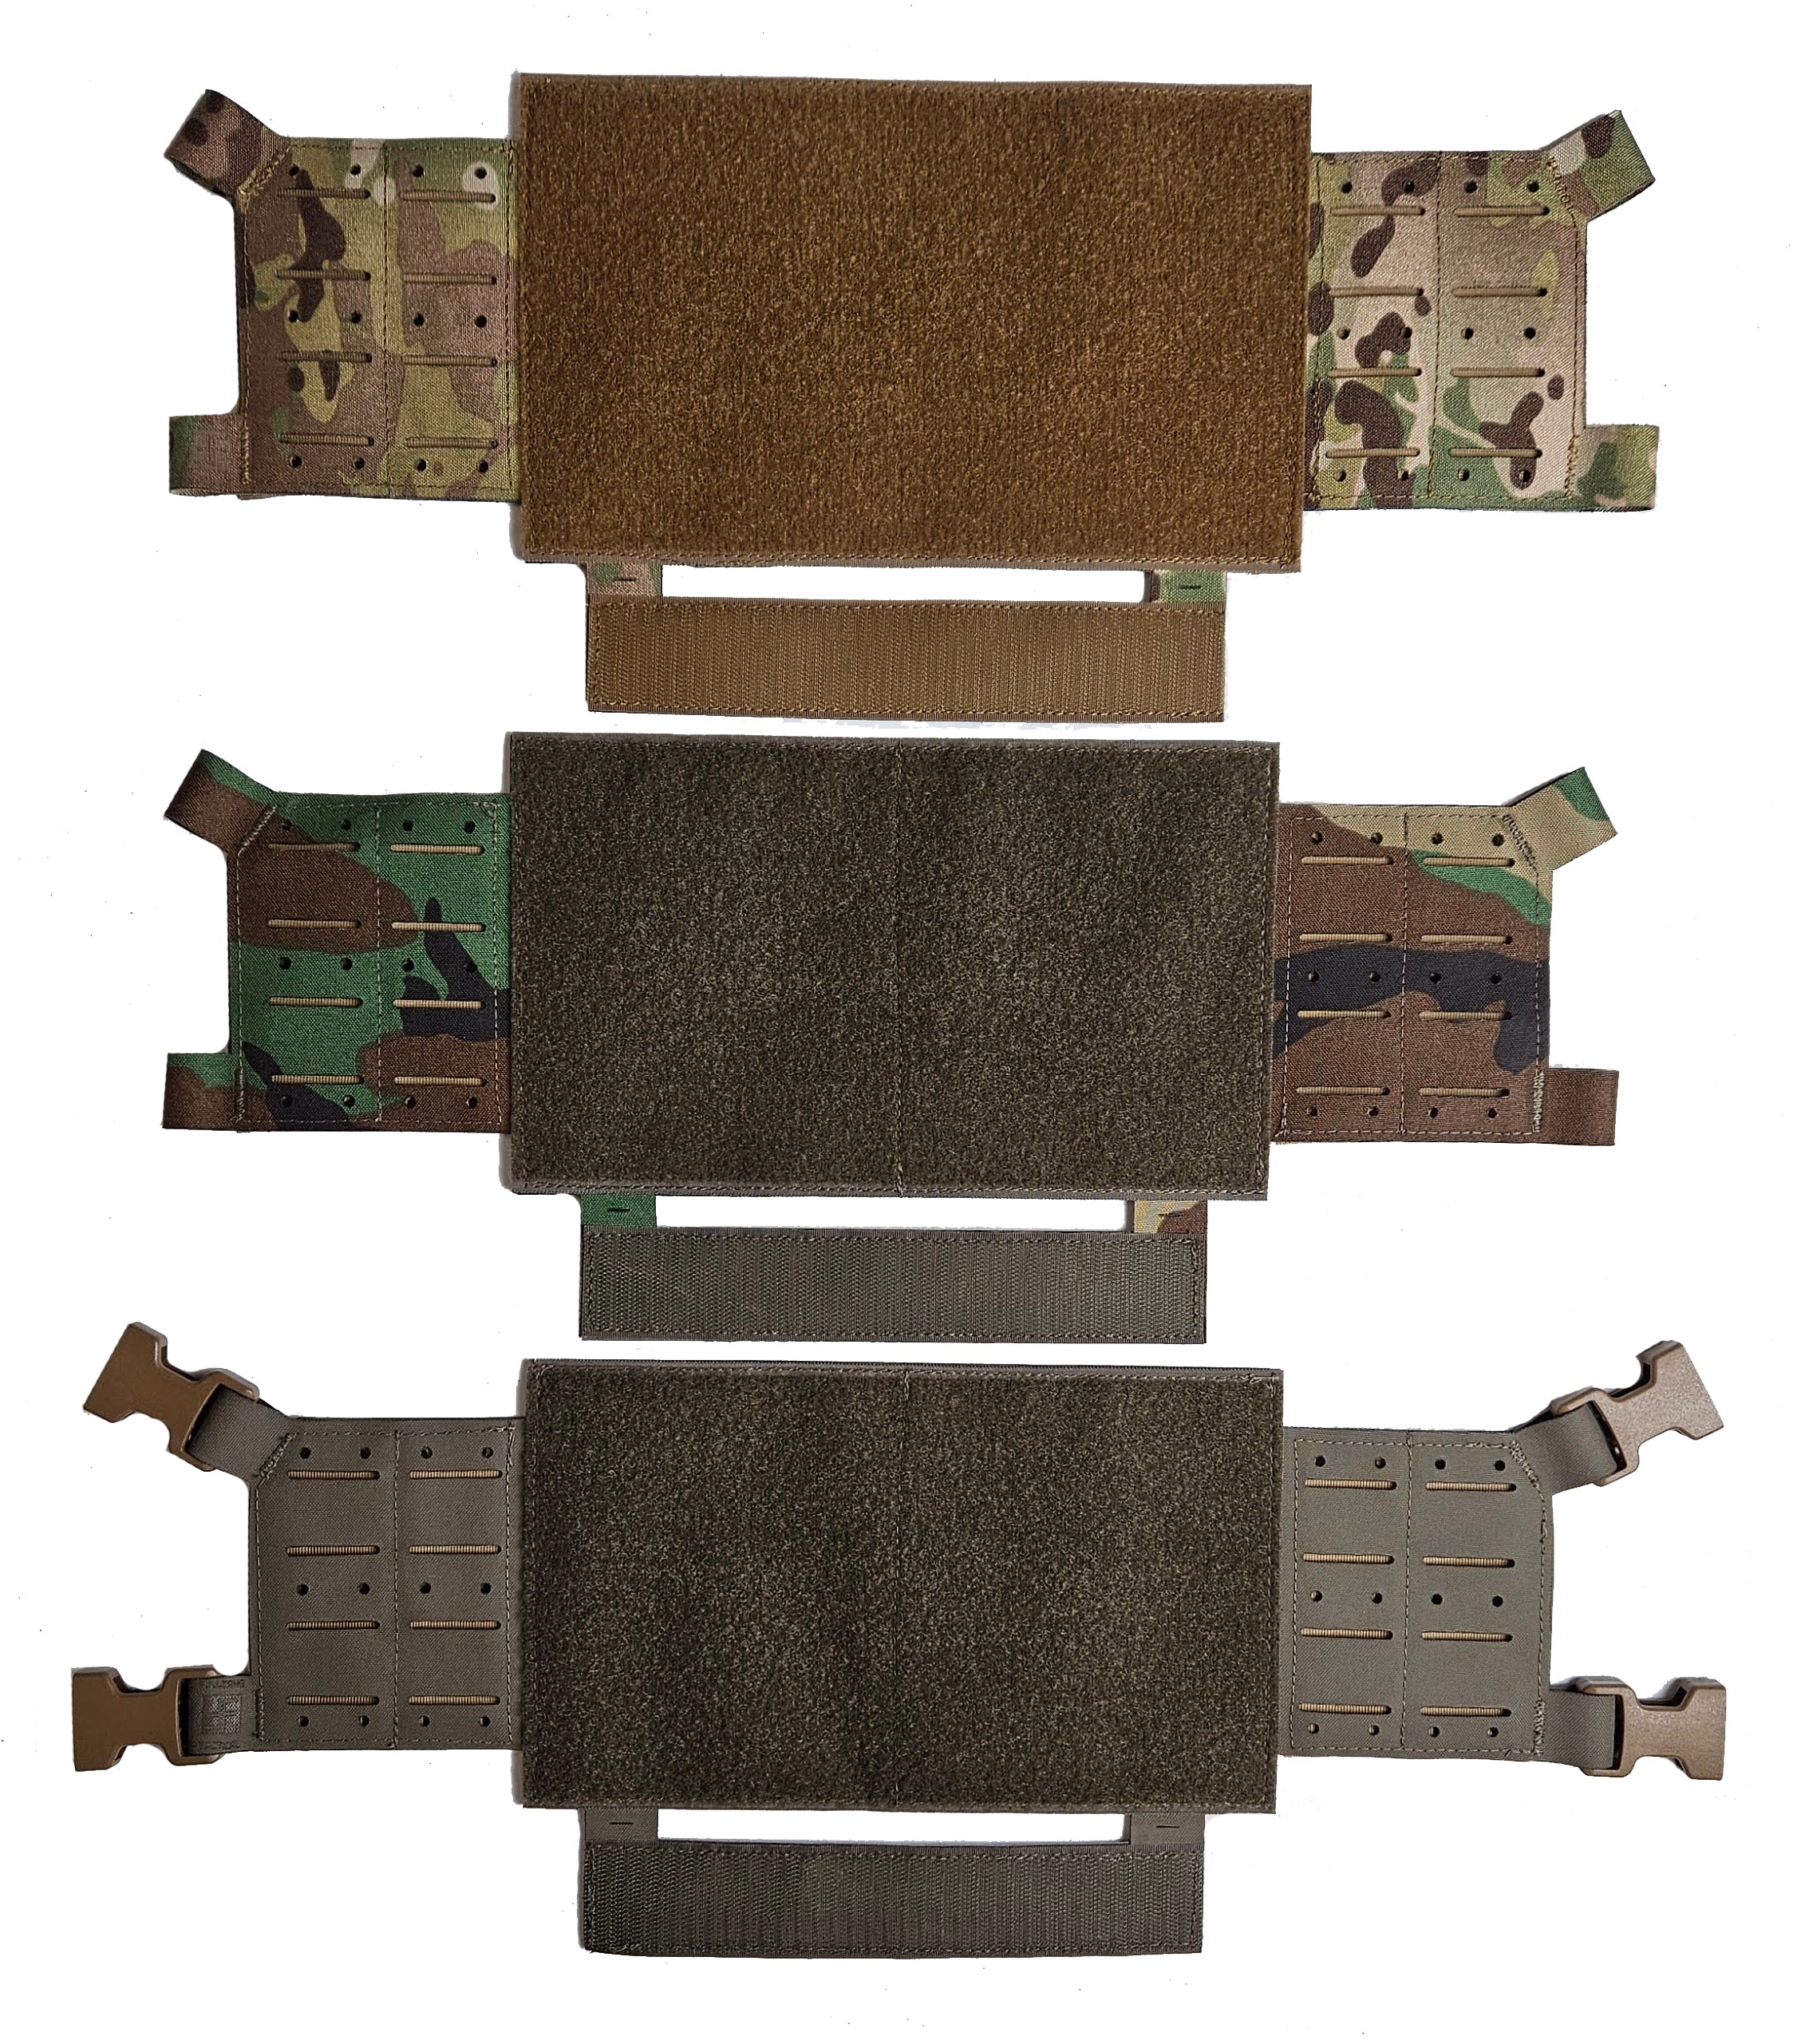 Modular Chest Rig-Kit Bag GEN2 – FullTang Tactical